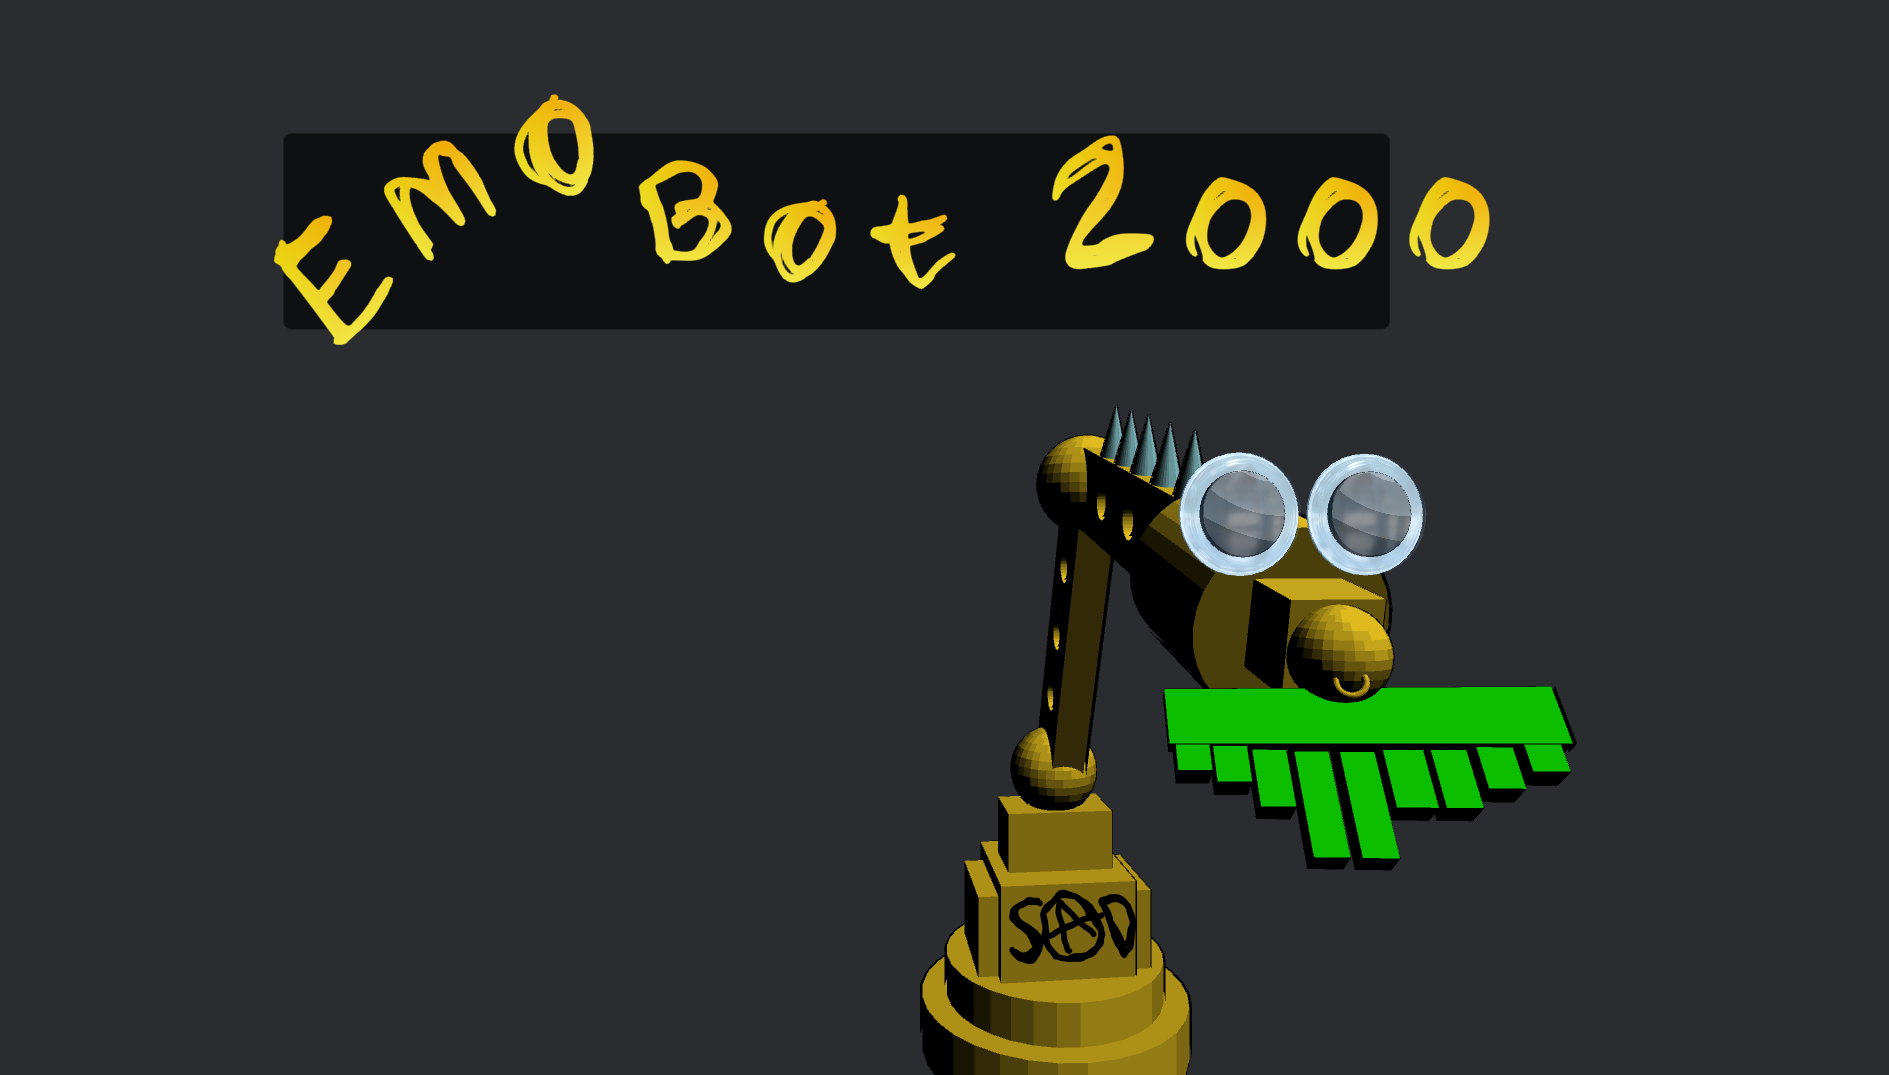 Emo Bot 2000